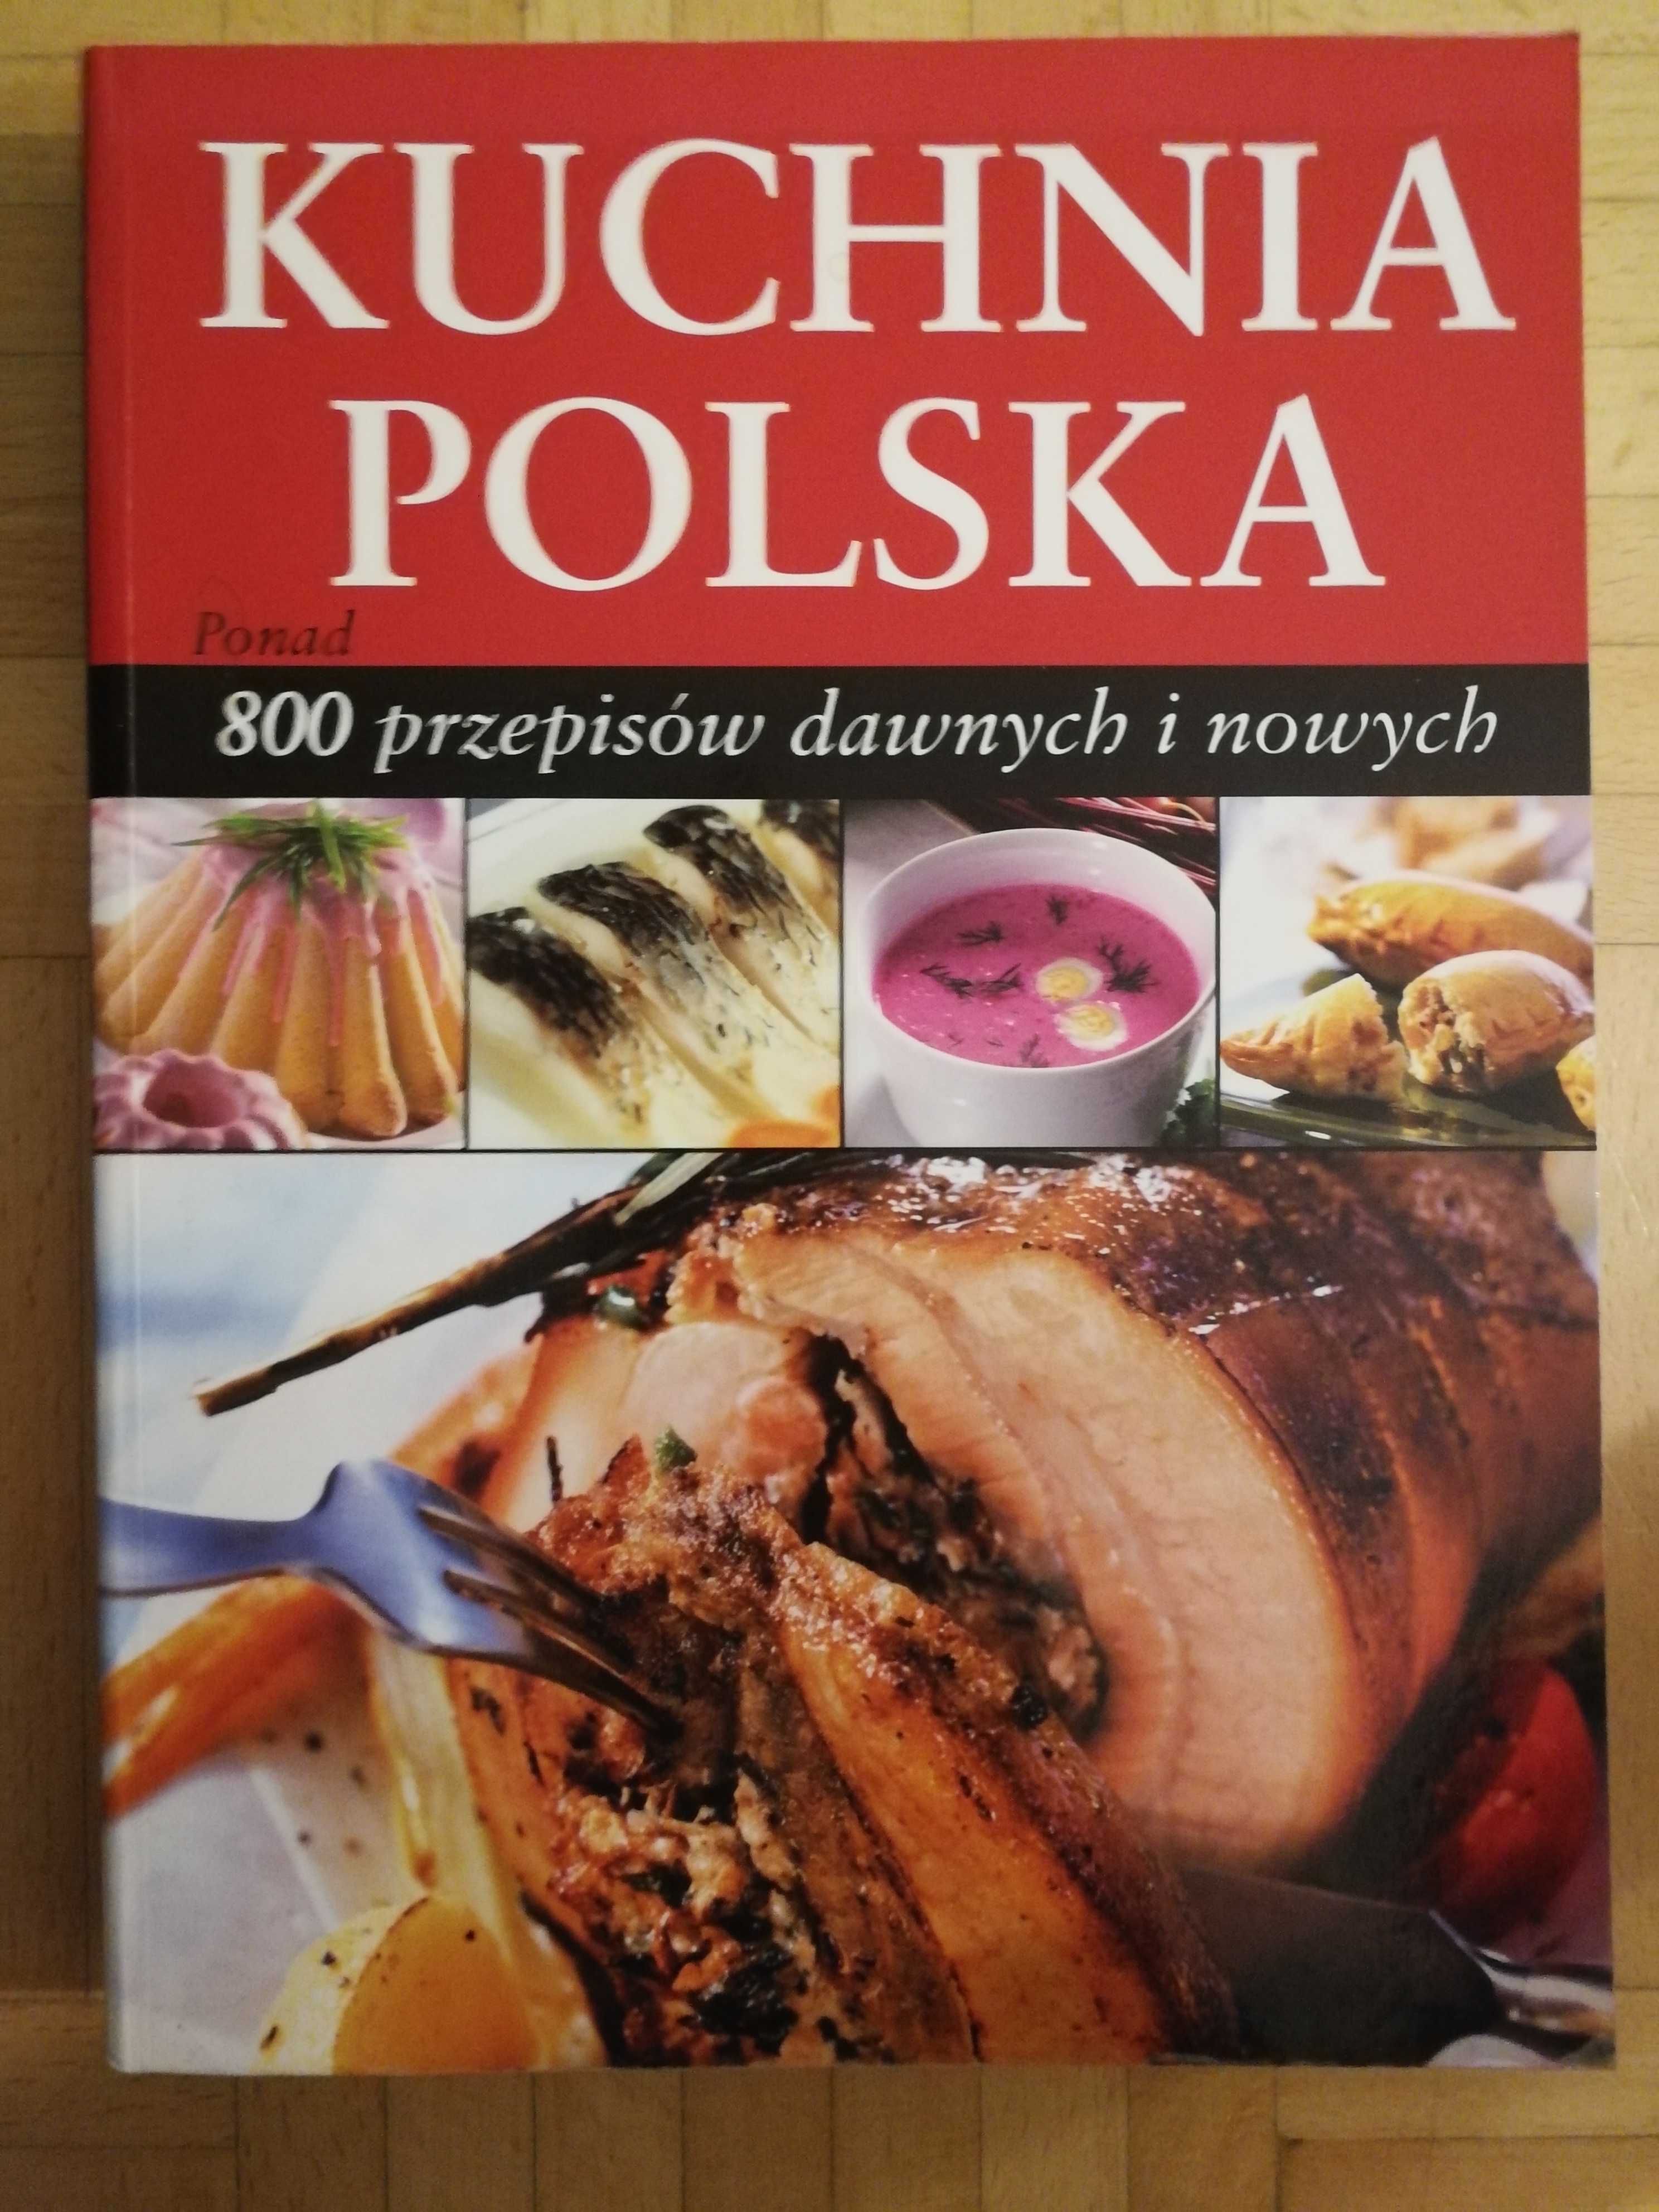 Książka "Kuchnia polska" 800 przepisow dawnych i nowych